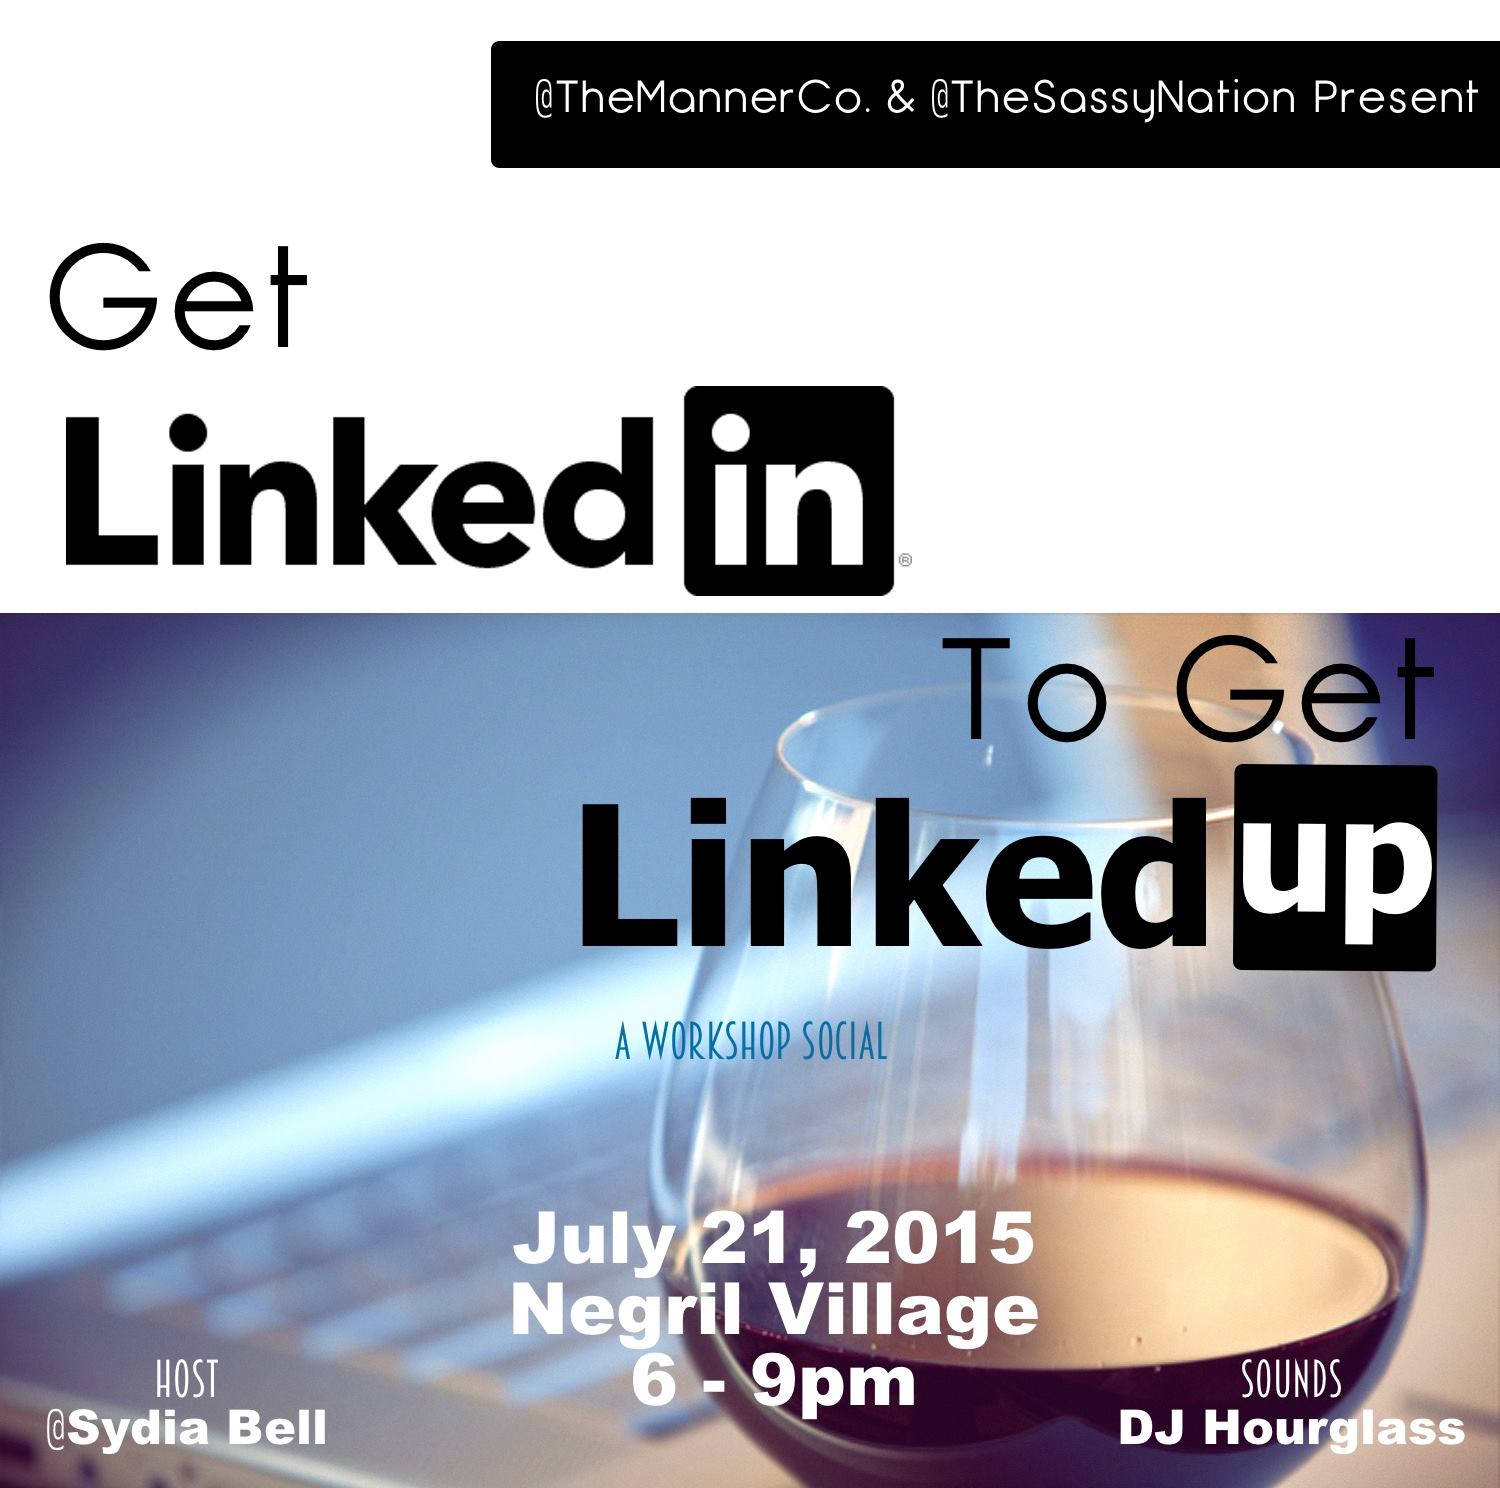 LinkedIn & LinkedUp Workshop and Networking Social